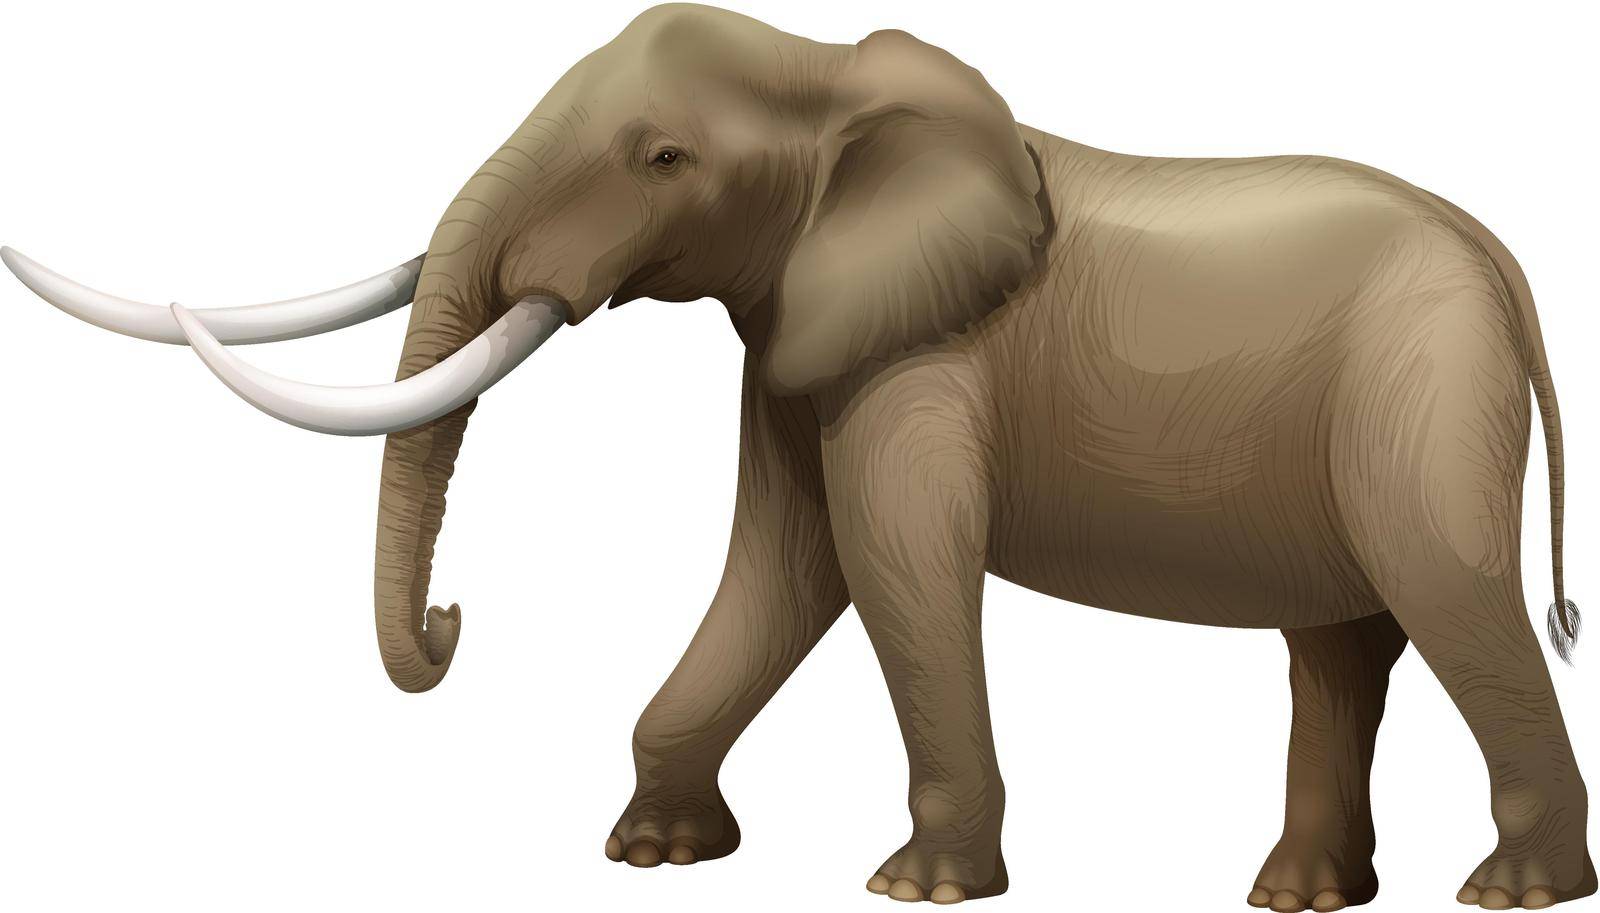 Illustration of the elephant